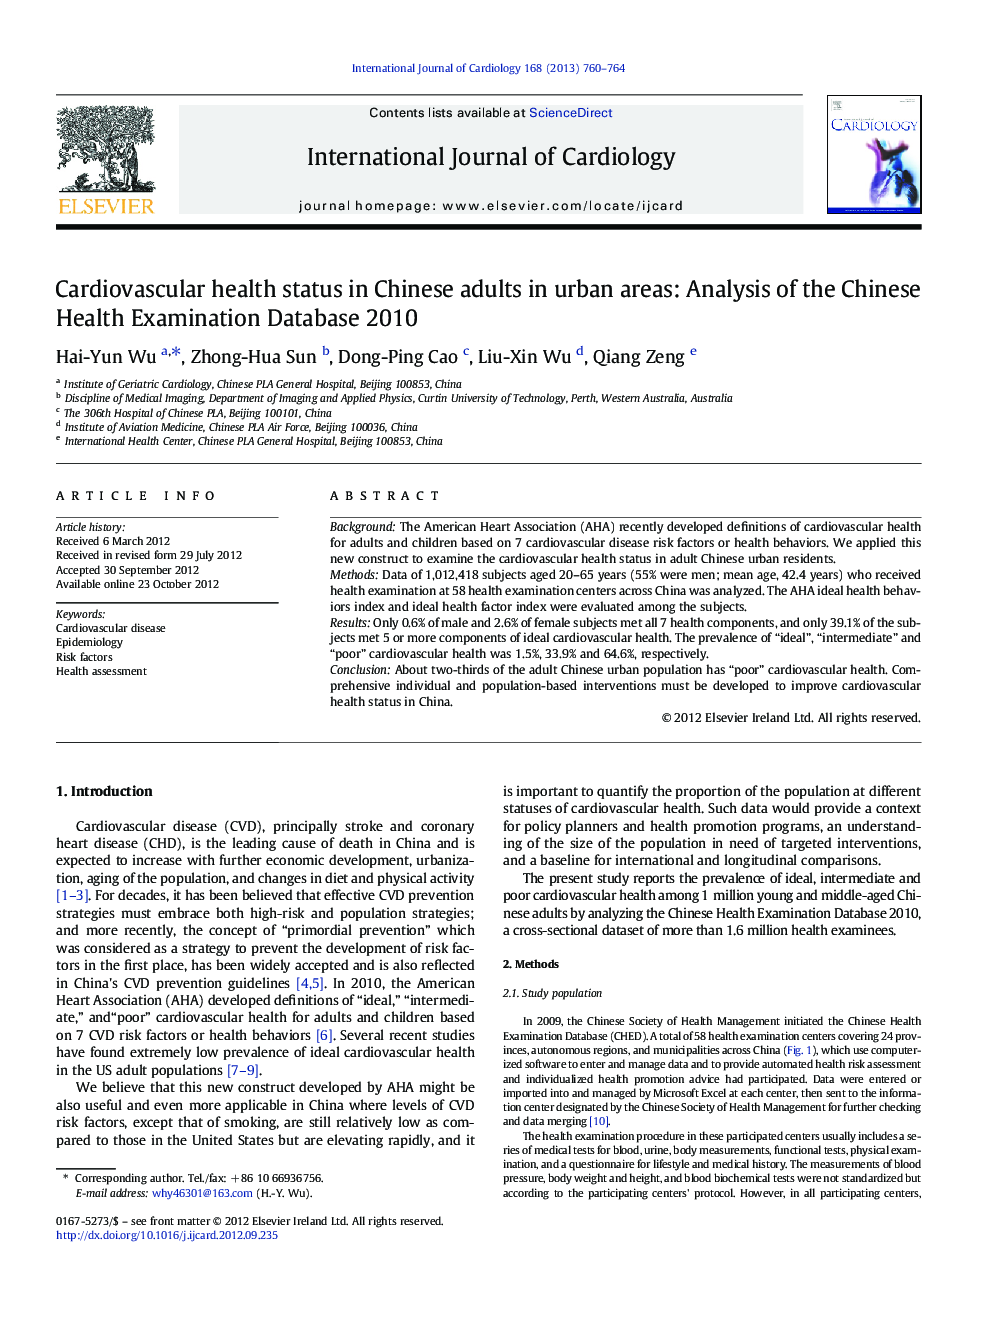 وضعیت سلامت قلب و عروق در بزرگسالان چینی در مناطق شهری: تجزیه و تحلیل پایگاه اطلاعات آزمایشگاه بهداشت چین 2010 